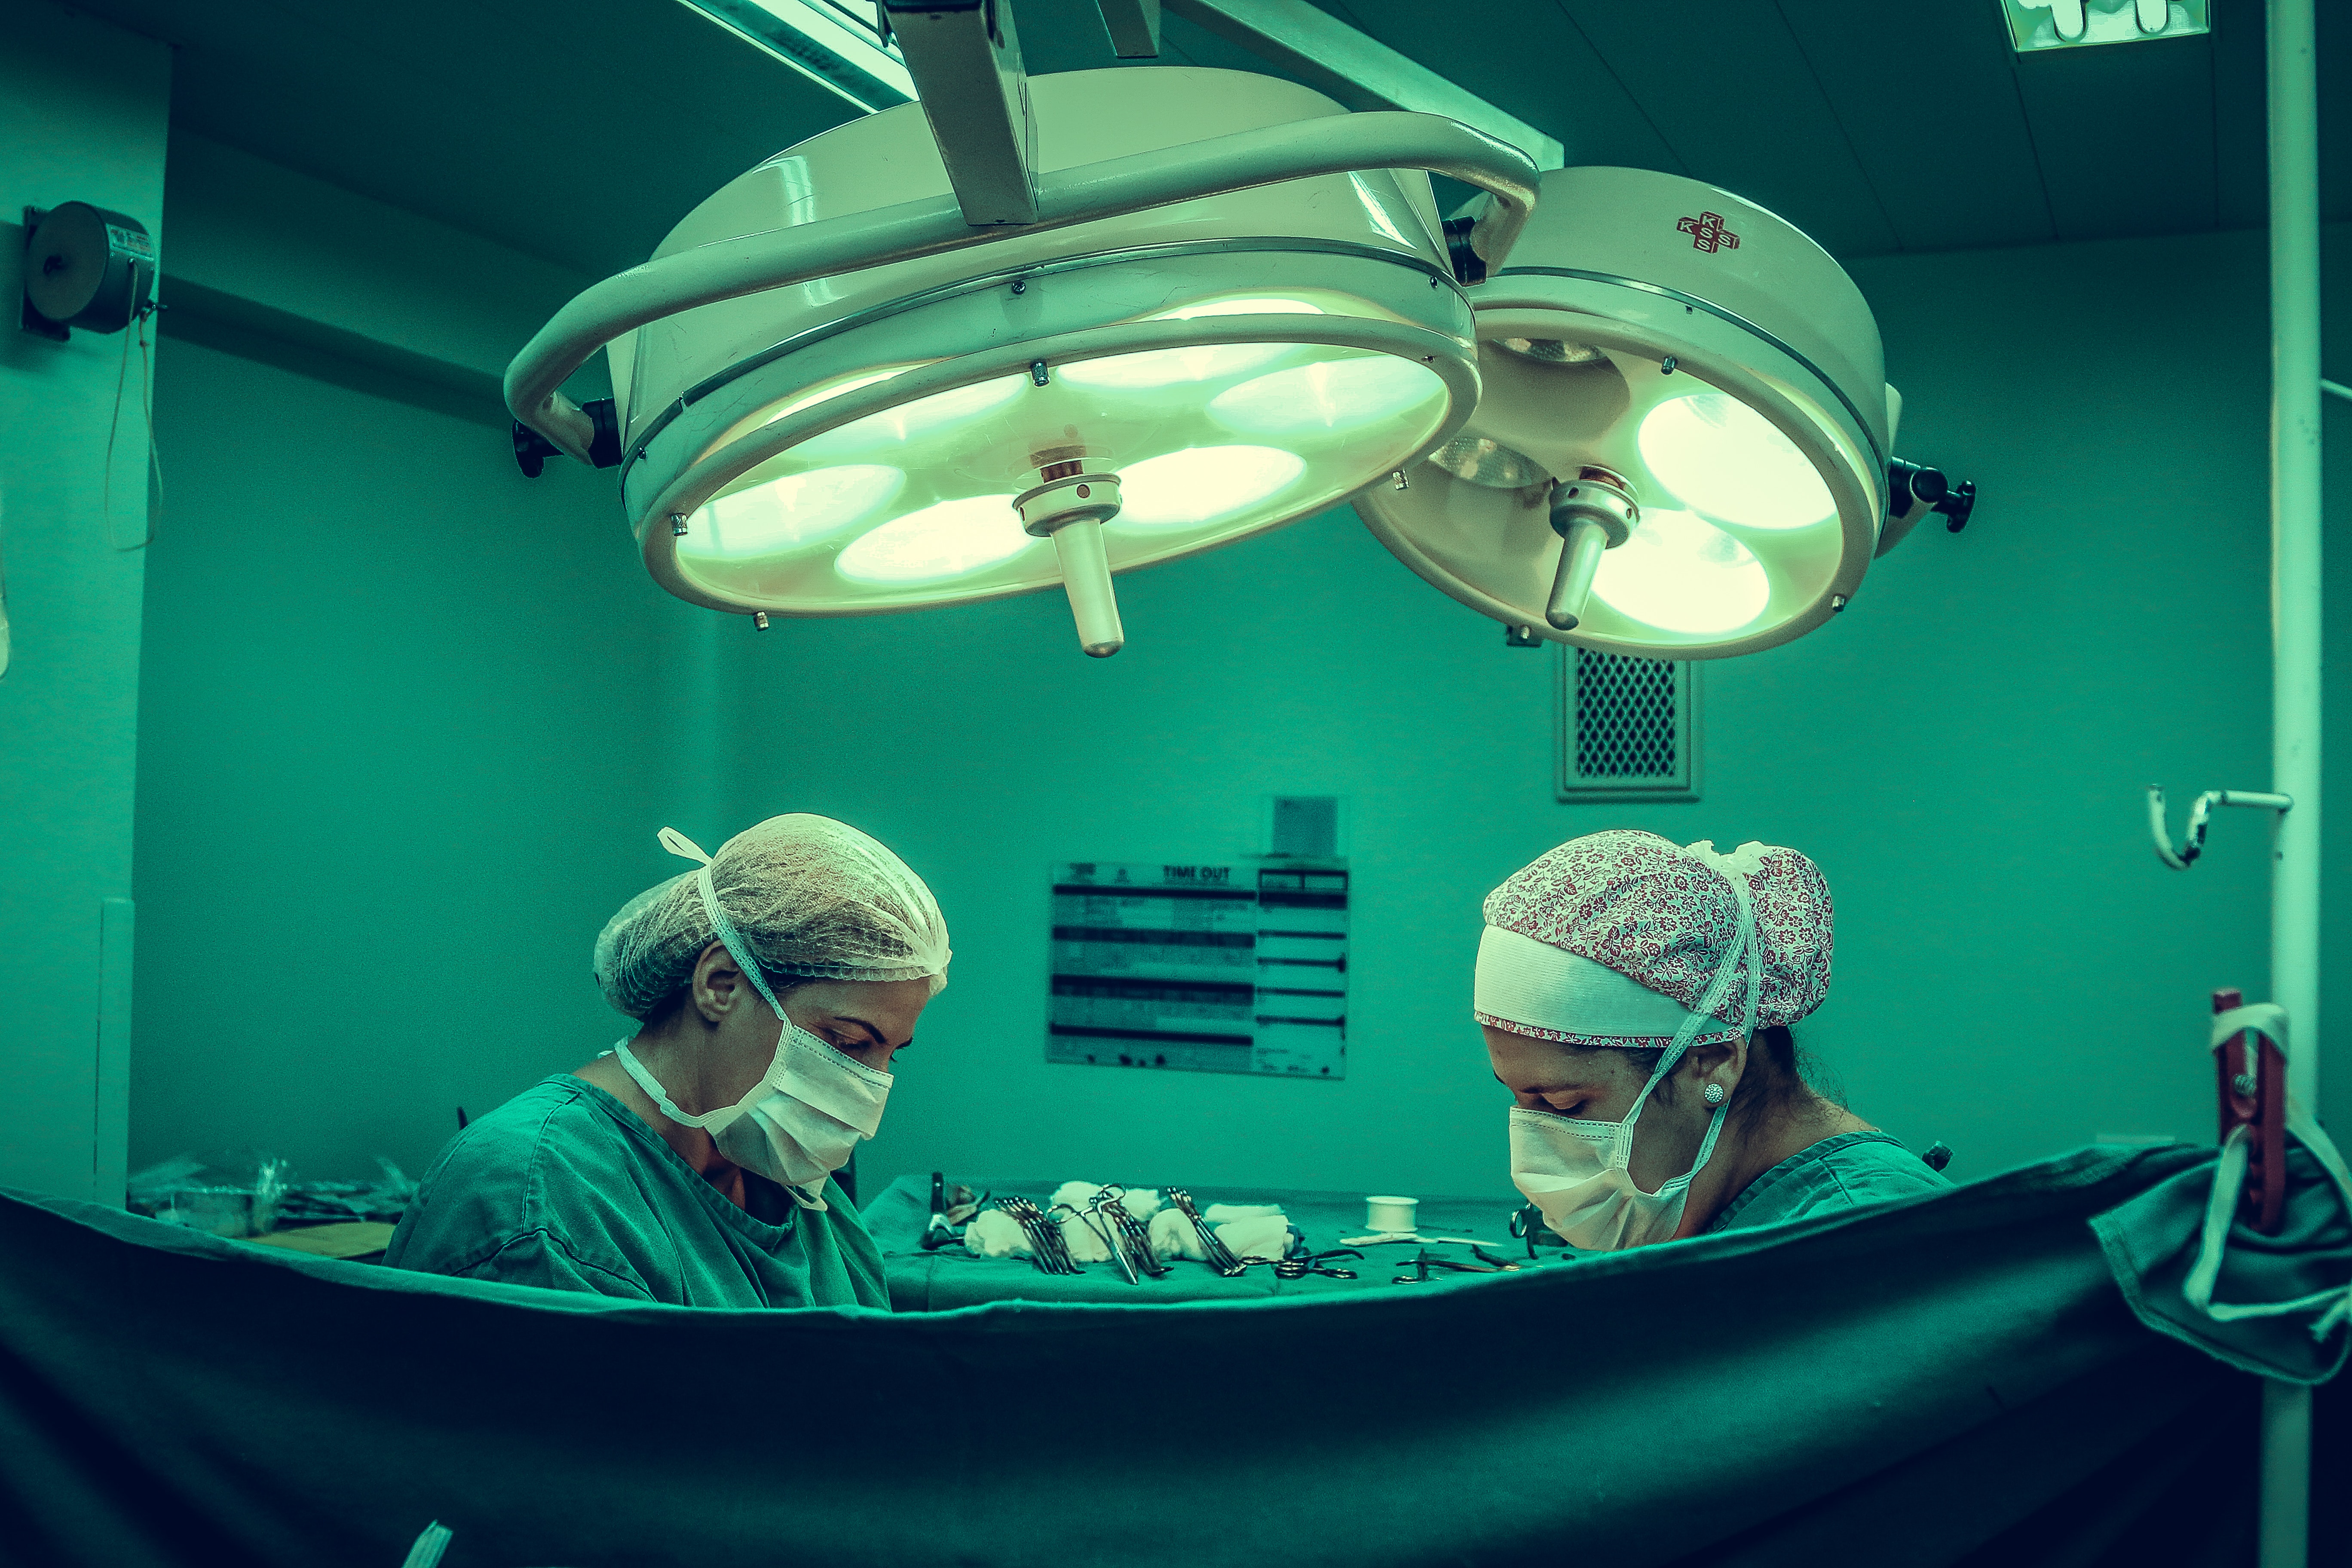 Zwei Personen sind bei einer Operation zu sehen.